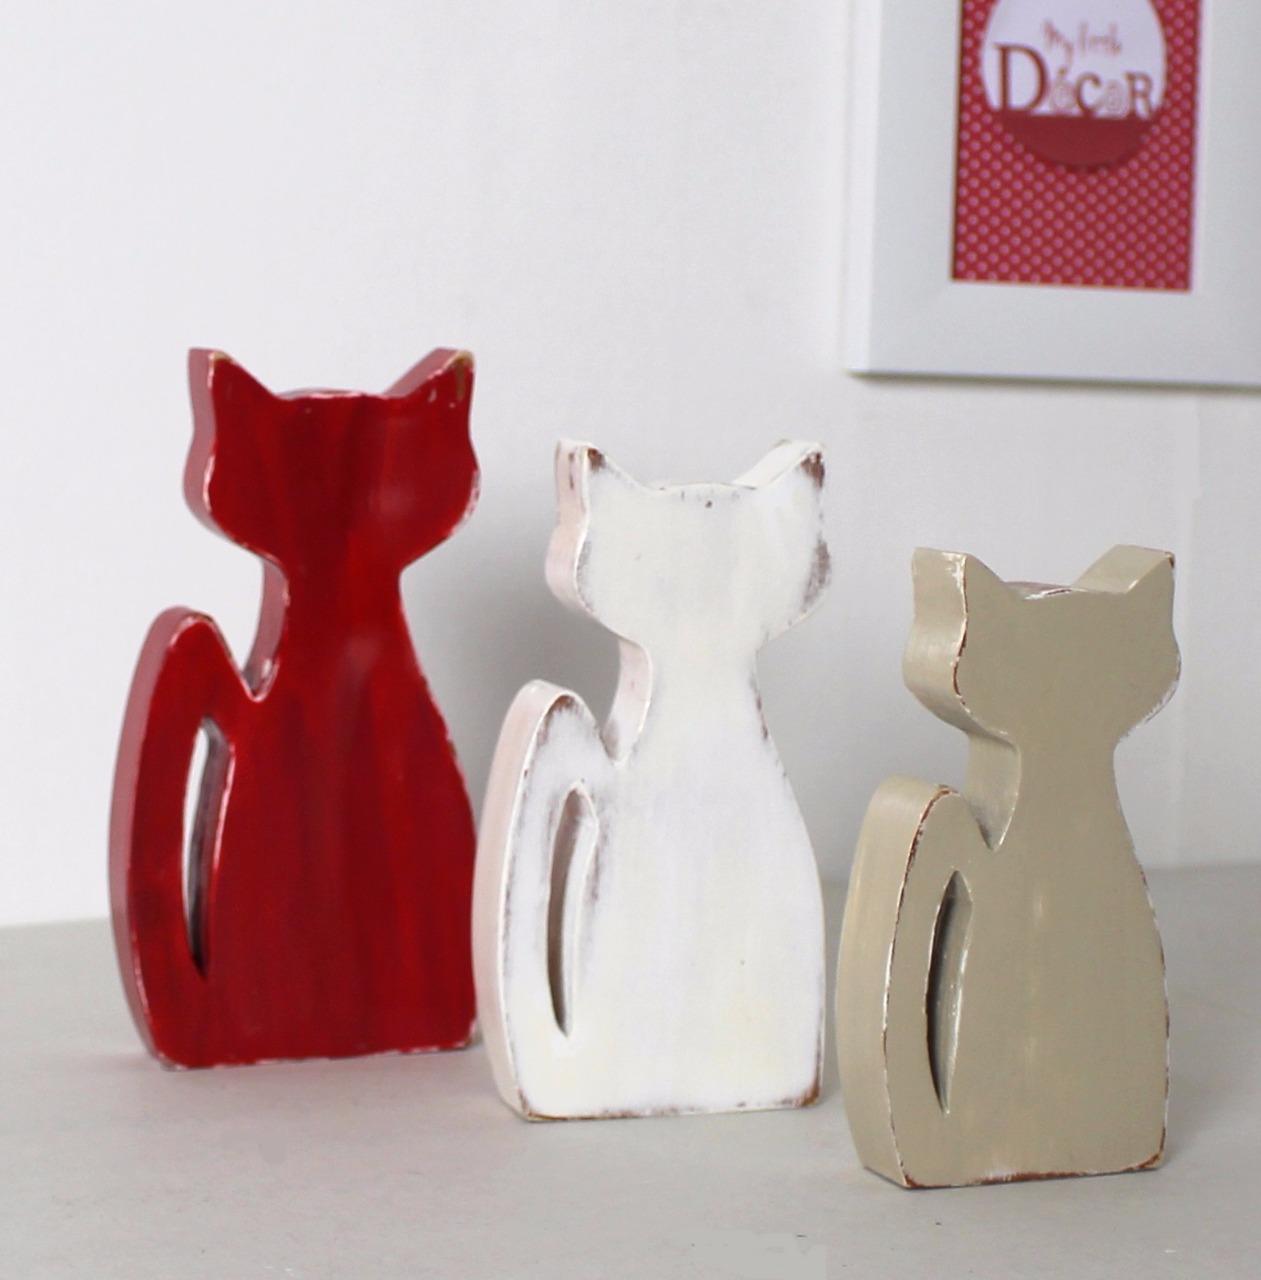 Lot de 3 chats en bois rouge lie de vin, blanc et taupe clair patinés. 